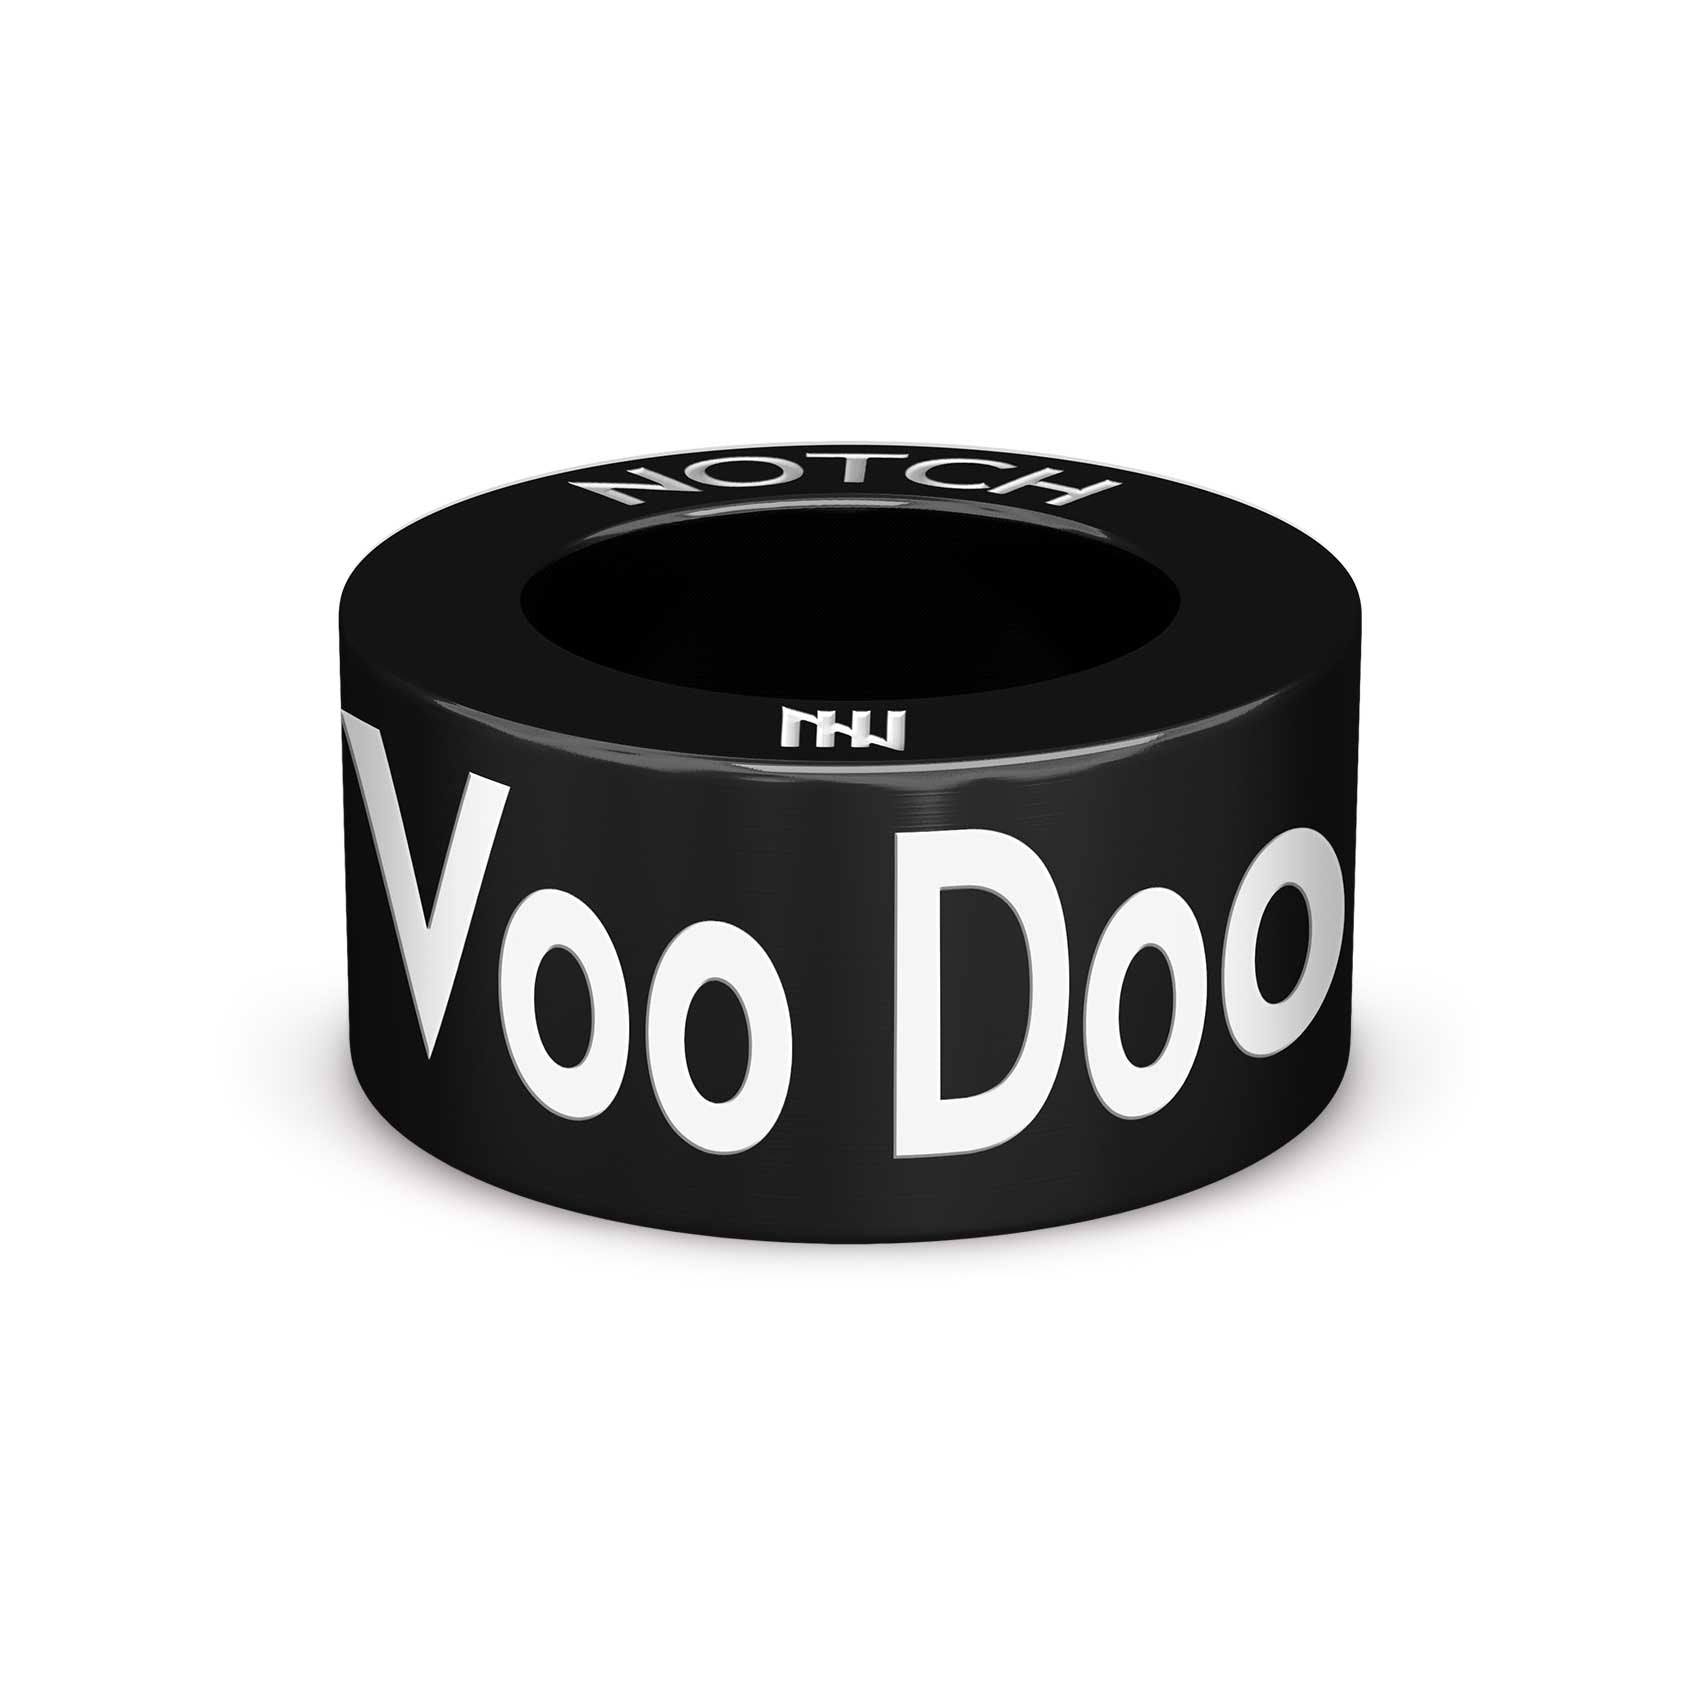 Voo Doo by Cobbs